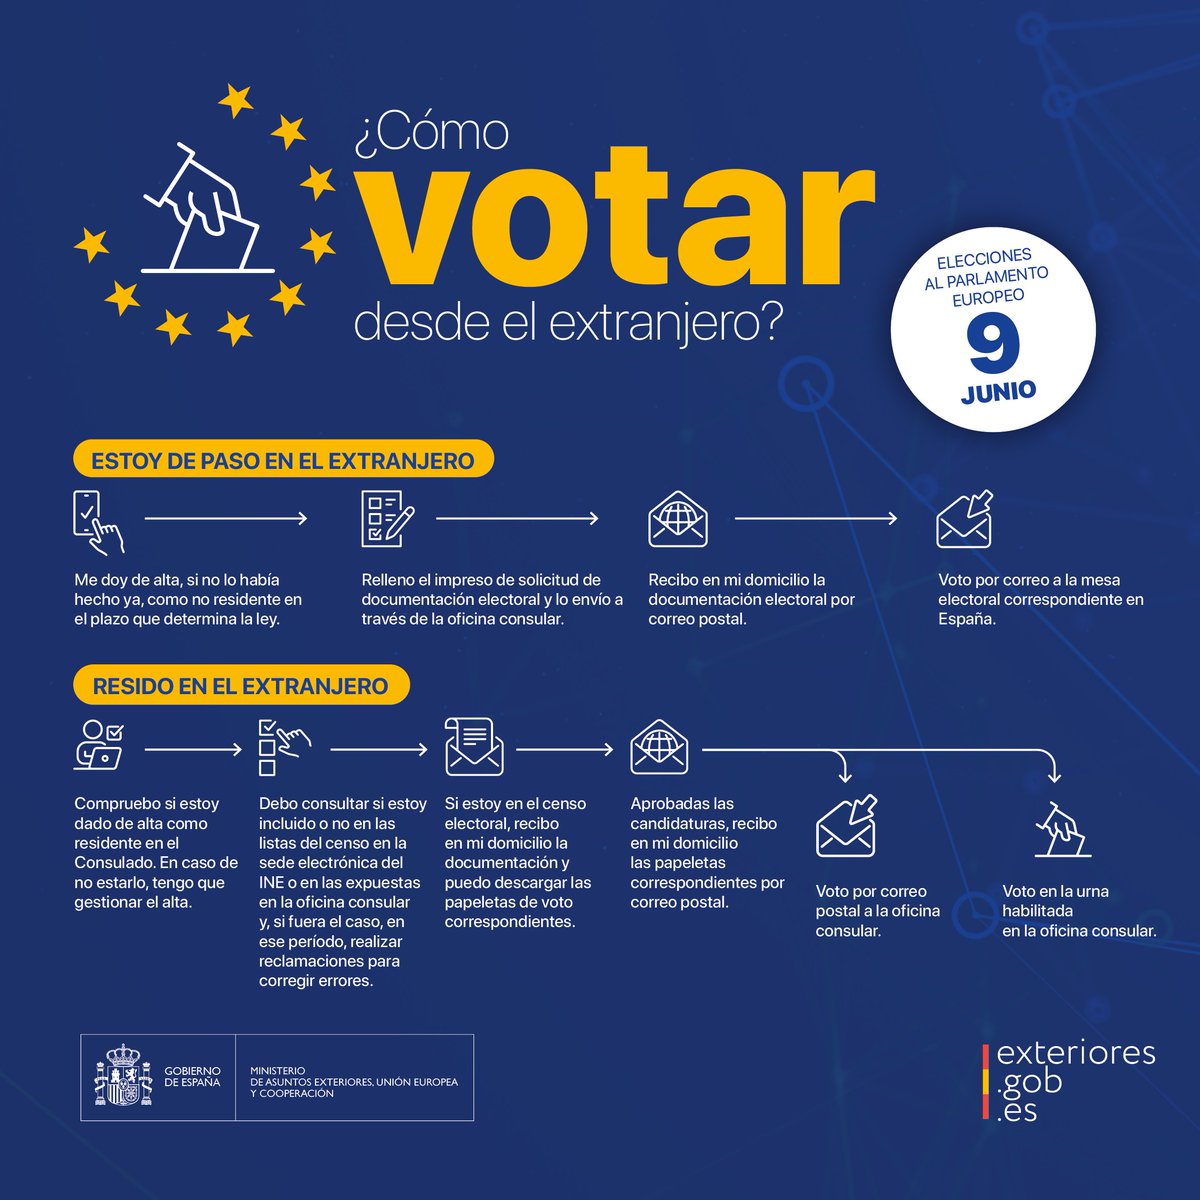 #VotoCERA: si eres español residente en el extranjero con derecho a voto en las #EleccionesEuropeas #EleccionesUE2024 del #9J, consulta la información disponible en nuestra web. Más ℹ️ en exteriores.gob.es/es/Paginas/Ele… #VotoExterior